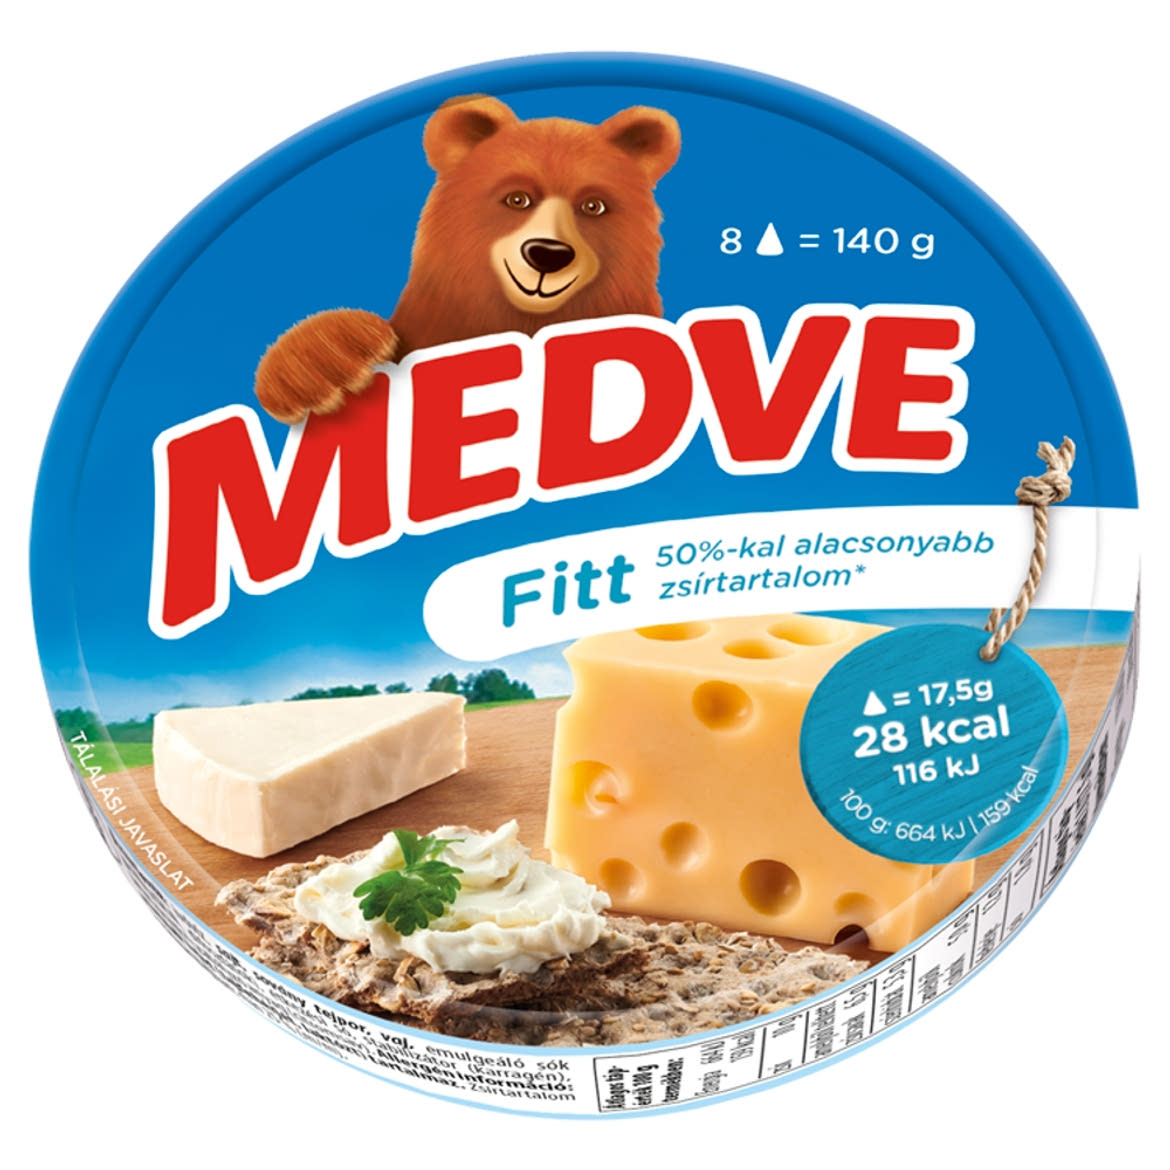 Medve fitt kenhető, félzsíros ömlesztett sajt 8 x 17,5 g